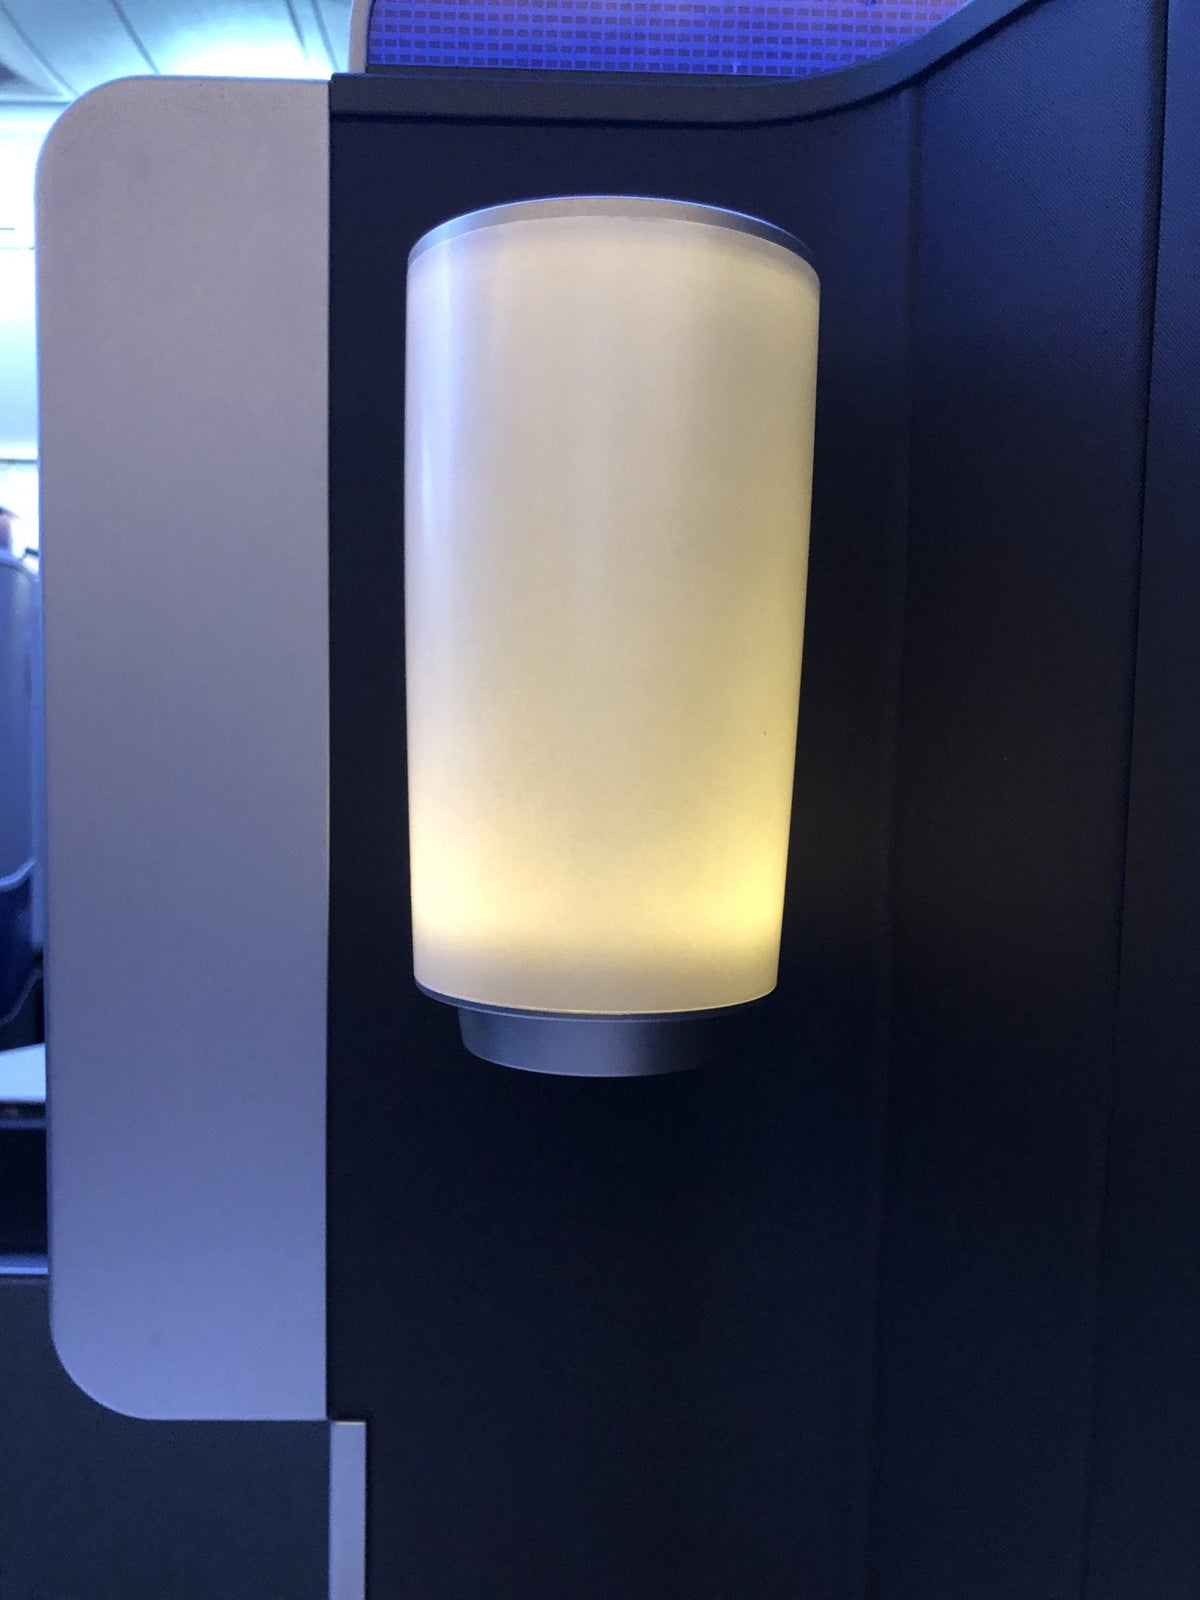 United Polaris 787-10 seat lamp illuminated